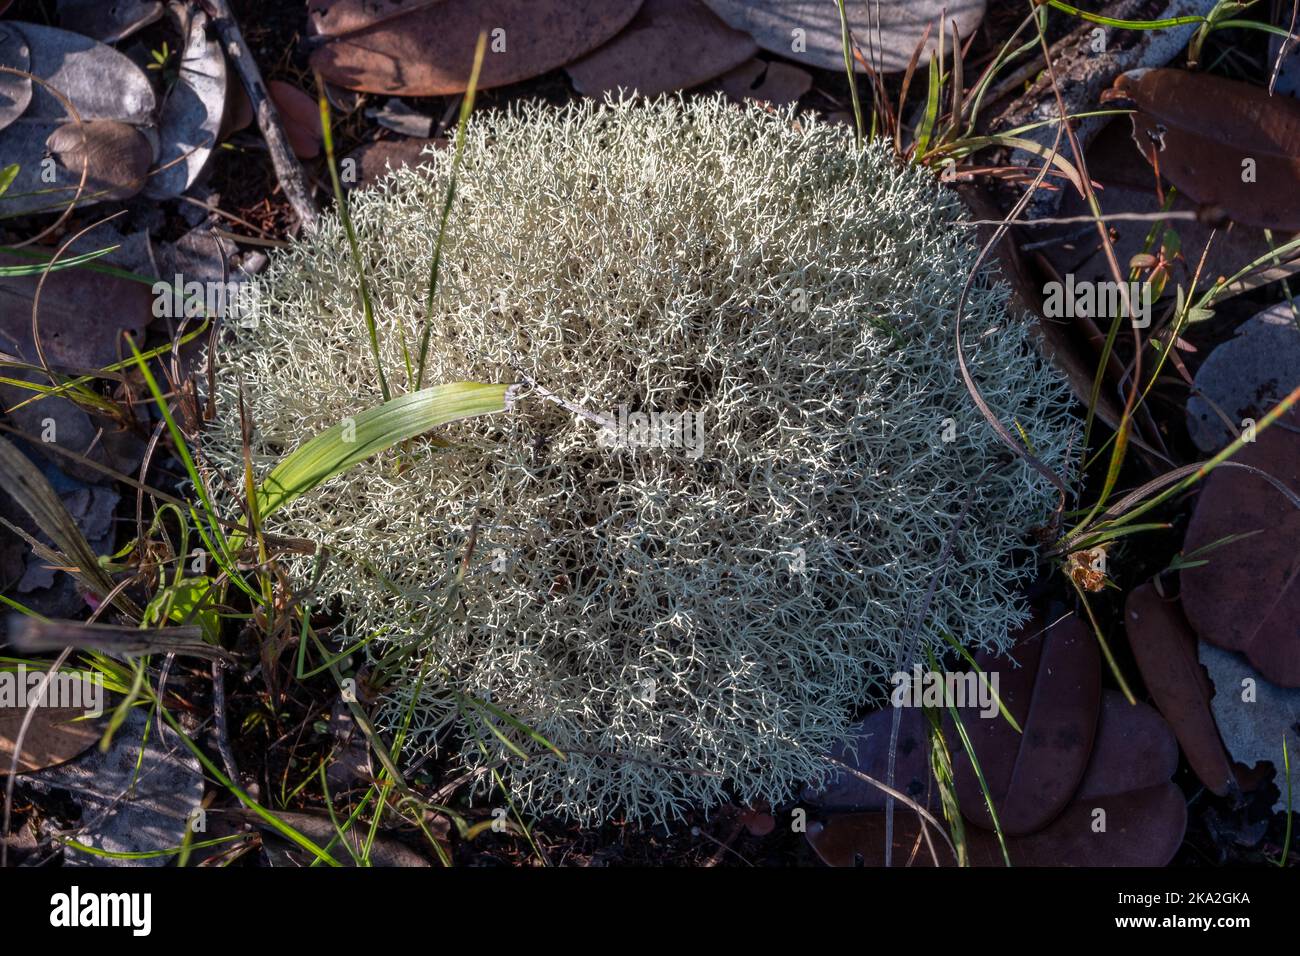 Groupe de lichen au sol. Roraima, Brésil. Banque D'Images